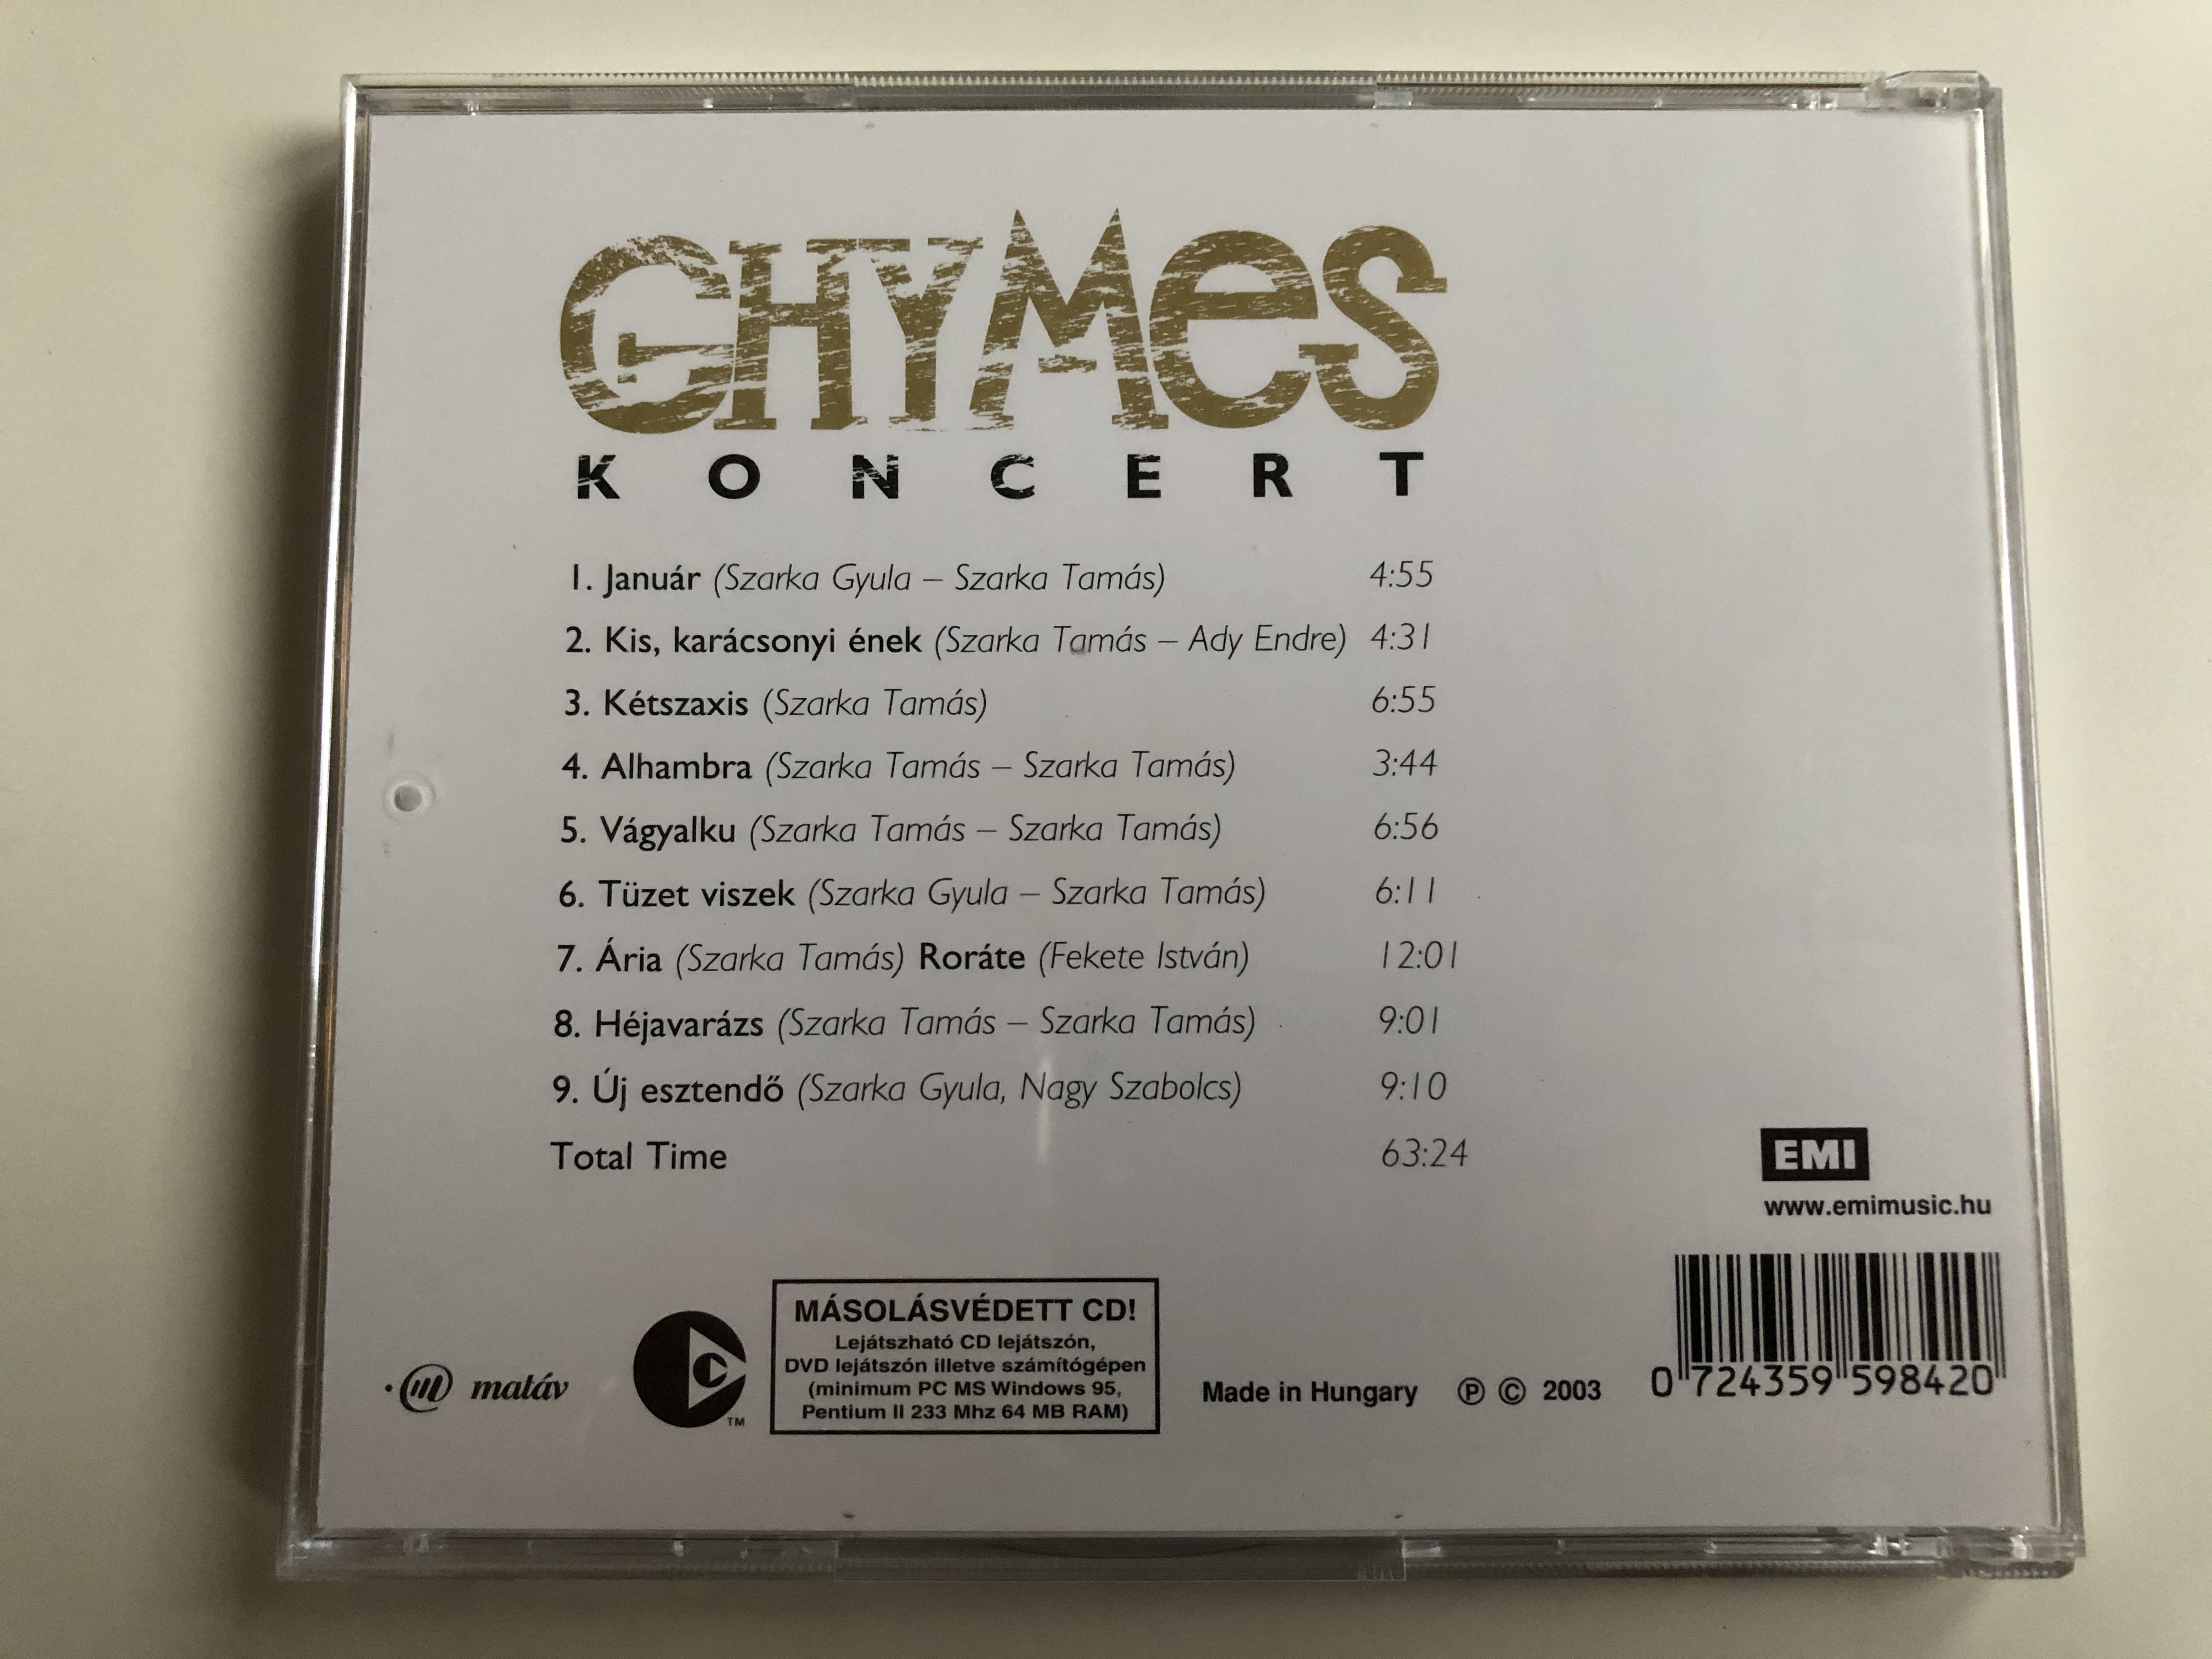 ghymes-koncert-vendegek-matav-szimfonikus-zenekar-ligeti-andras-rudolf-peter-emi-audio-cd-2003-595984-2-4-.jpg